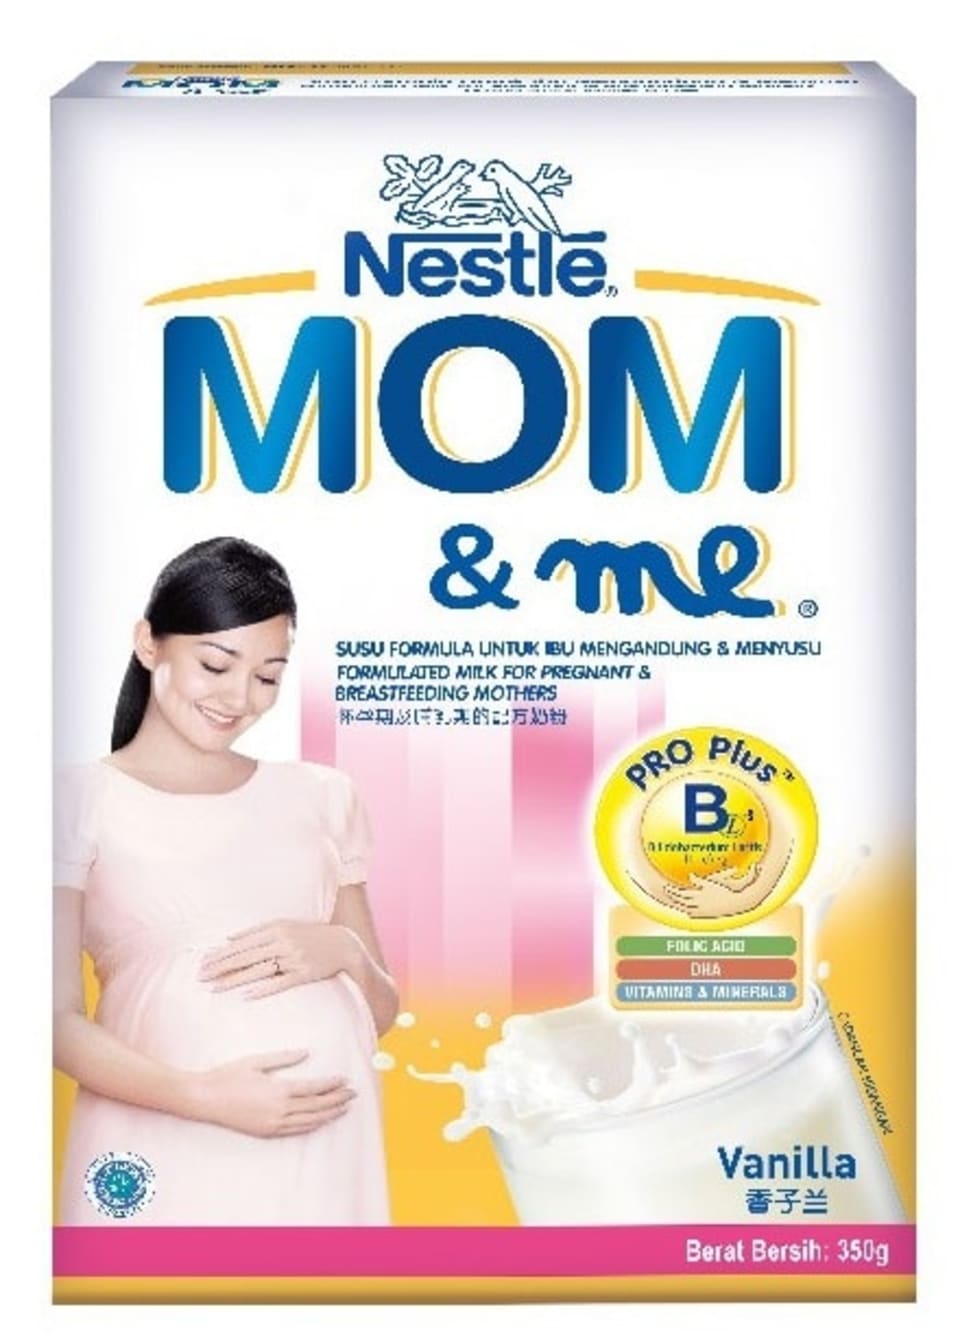 susu terbaik untuk ibu mengandung